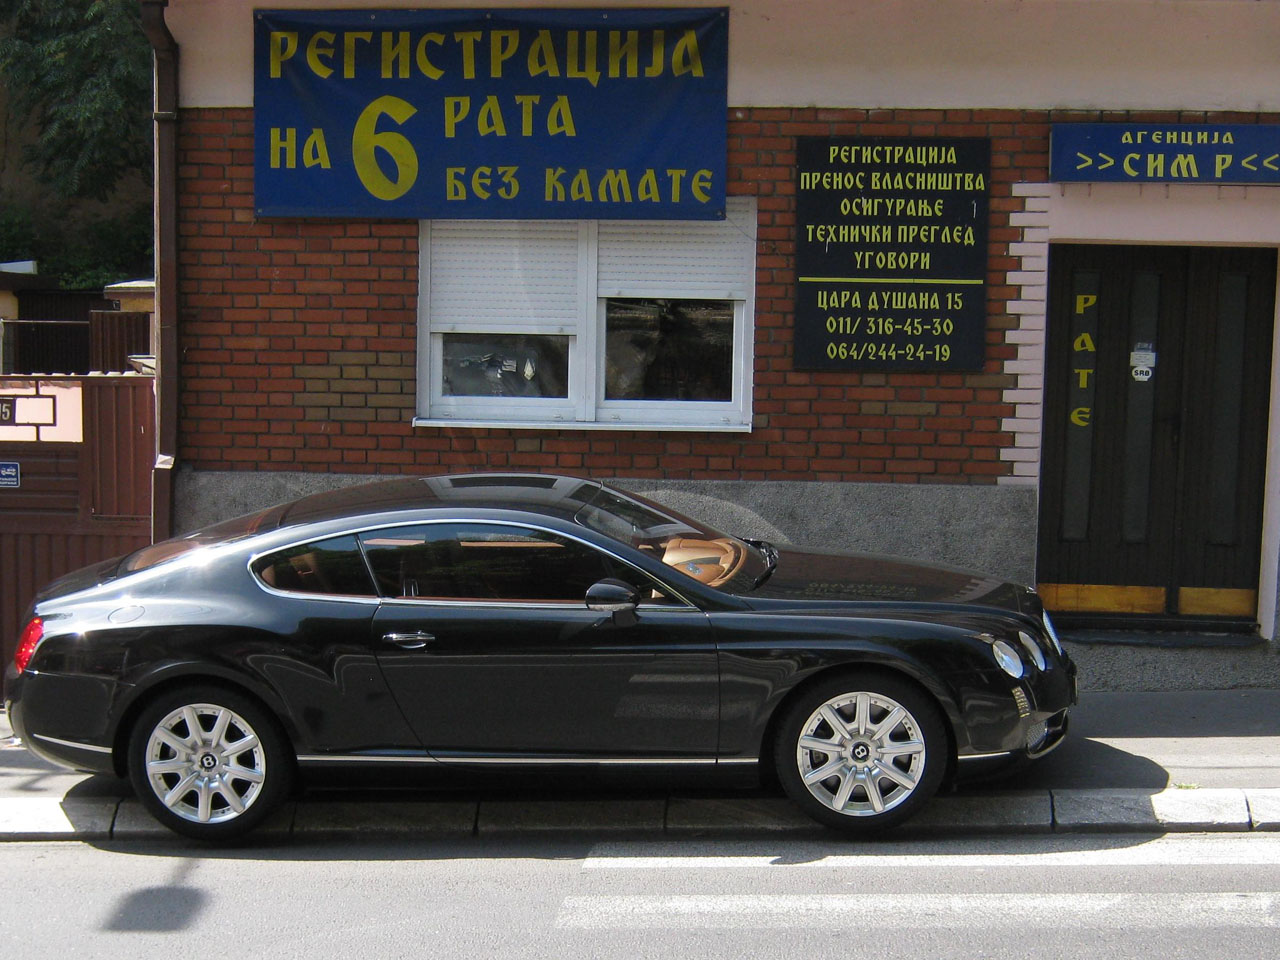 Slika 9 - AGENCIJA SIM R Registracija vozila Beograd